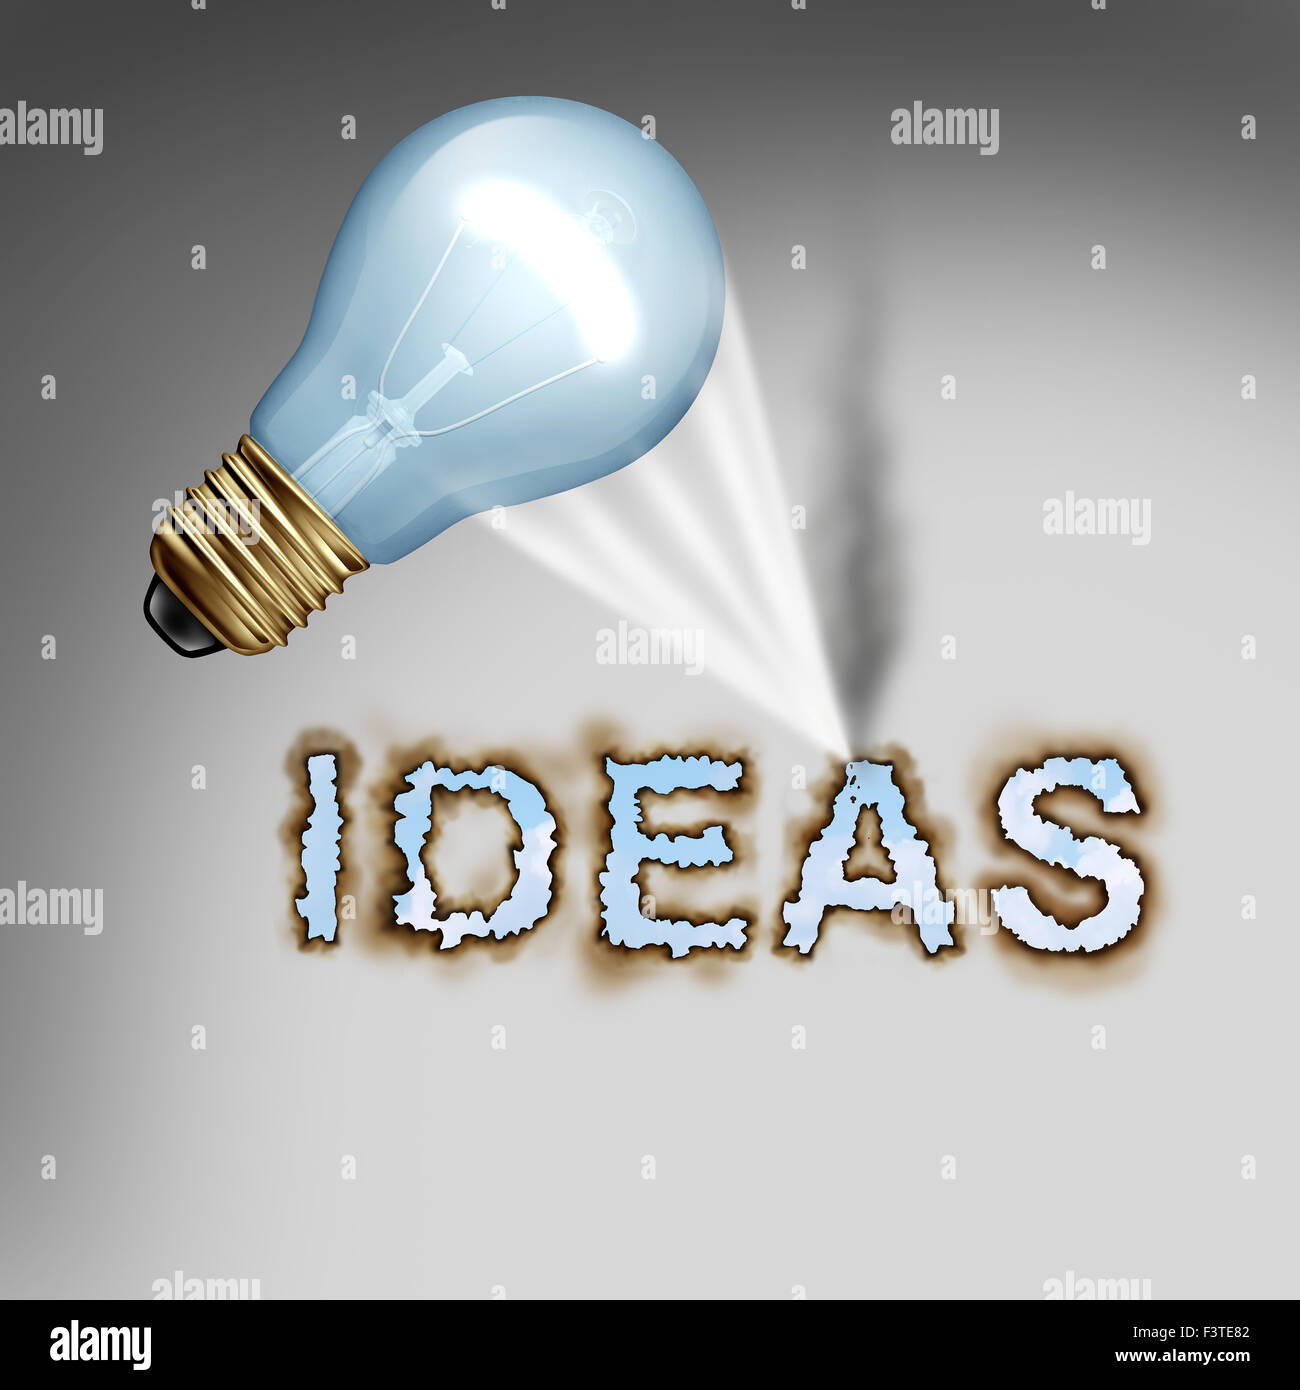 Idea concetto simbolo creative con una lampadina che riflette un caldo fascio di luce concentrato sulla carta la masterizzazione di lettere come una metafora di design per l'energia di creatività e pensiero potente. Foto Stock